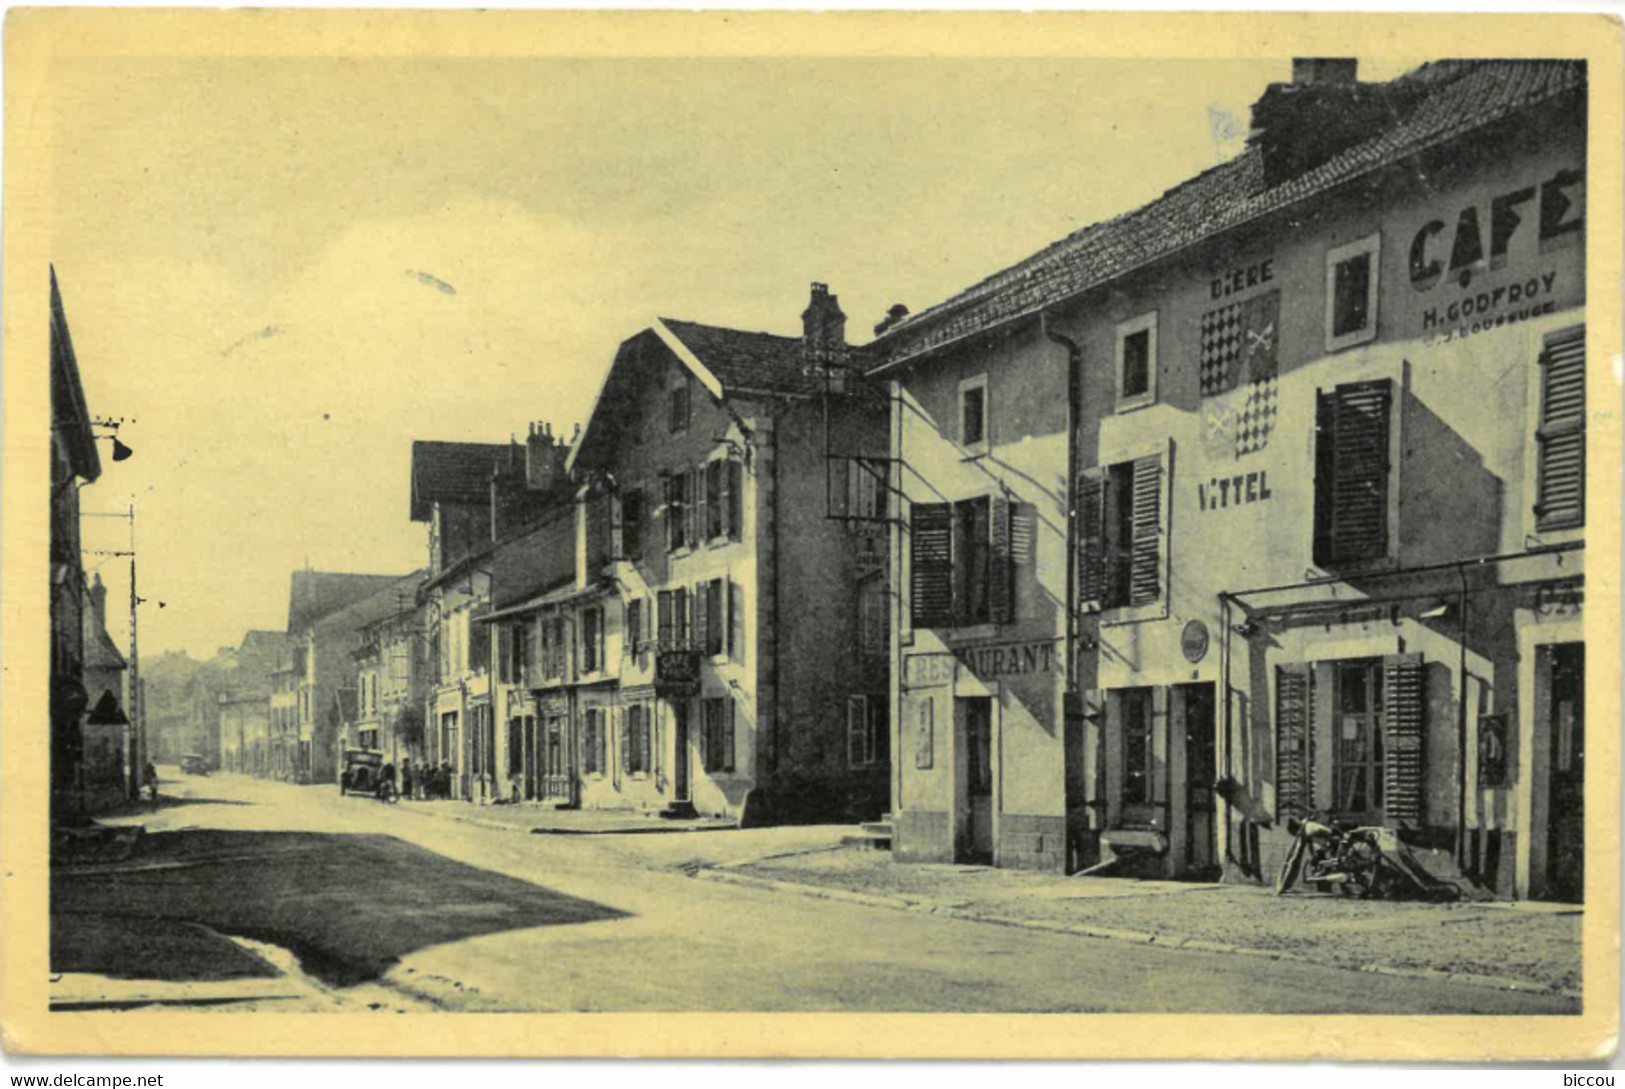 Cp GOLBEY (Vosges) 88 - 1953 - Le Centre (Restaurant, Café H. Godfroy, Motocyclette, Bière Vittel) RARE - Golbey